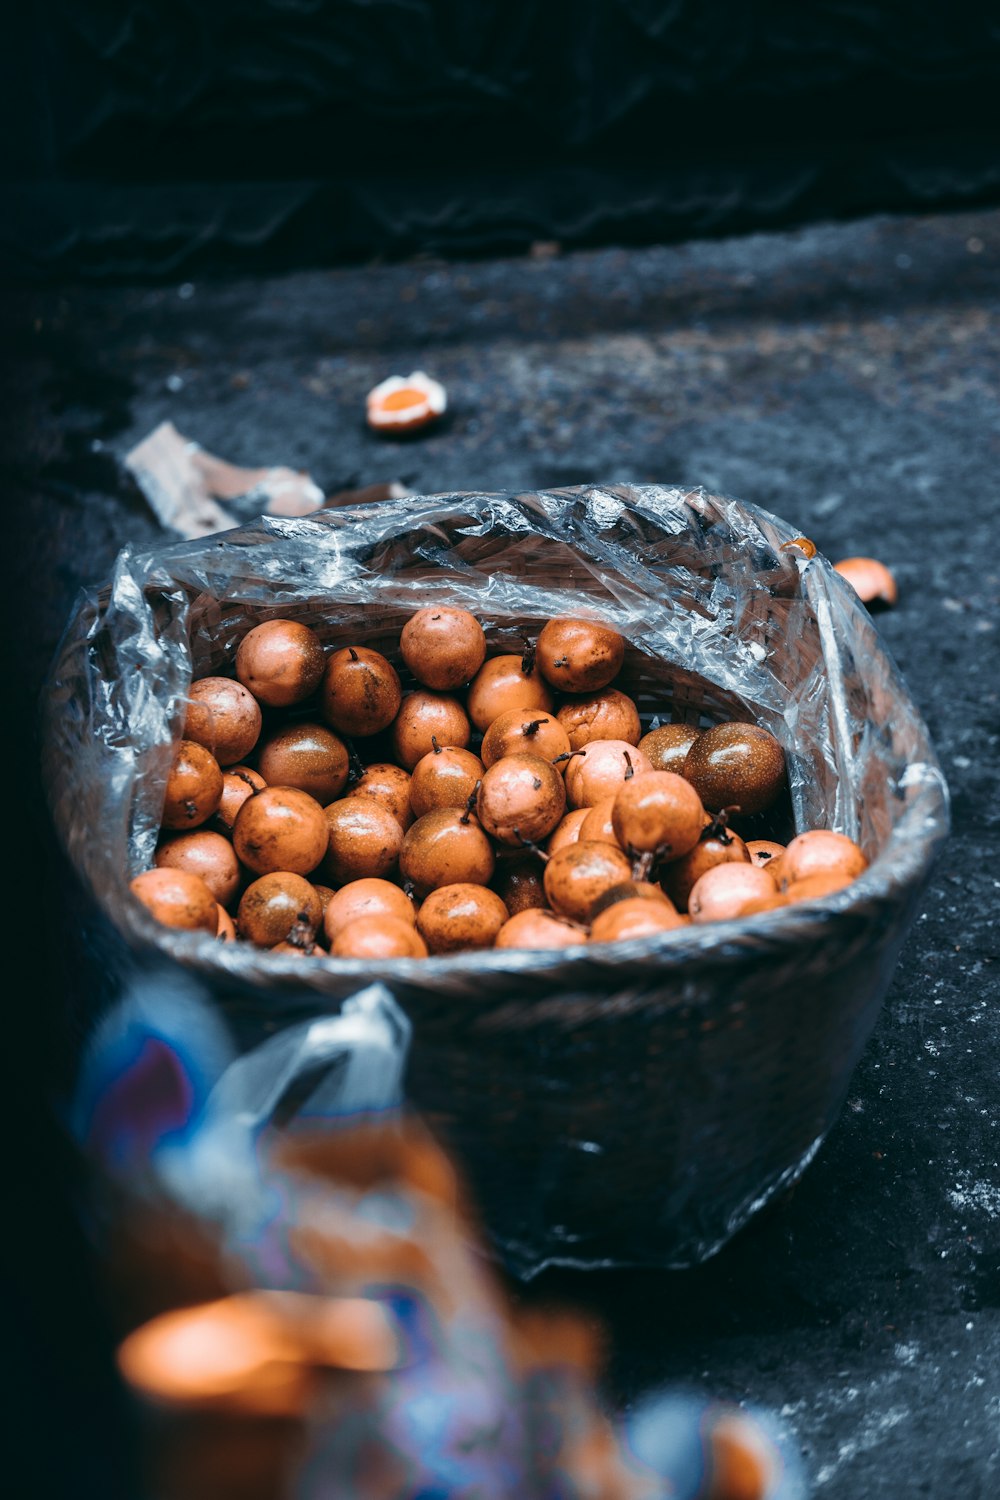 brown round fruits in black bucket